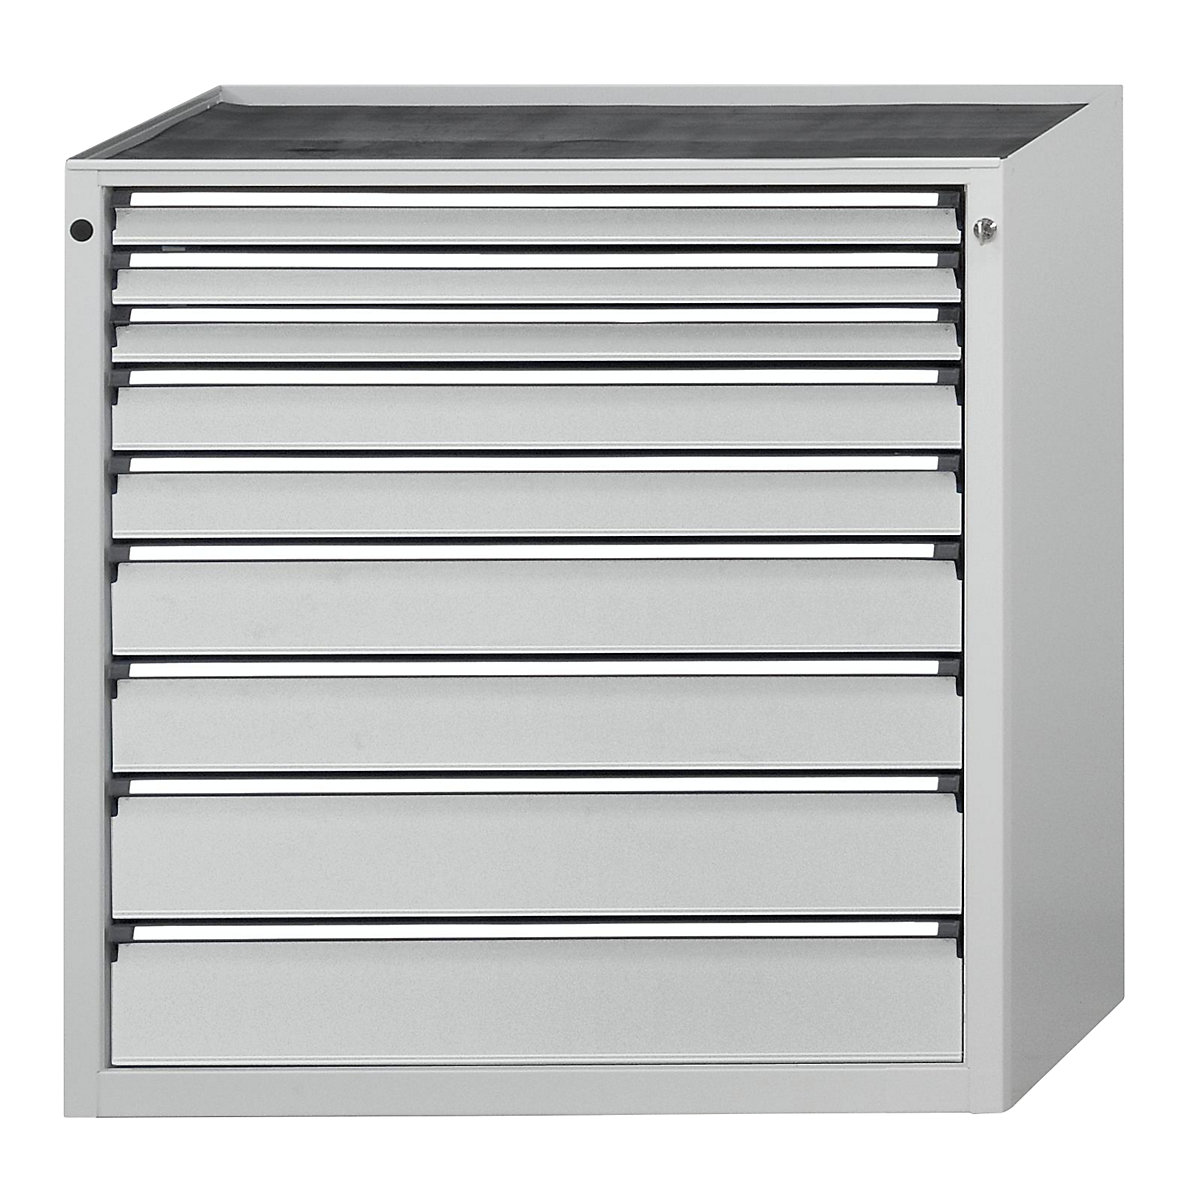 ANKE – Armoire à tiroirs, l x p 910 x 675 mm, 9 tiroirs, hauteur 980 mm, façade gris clair